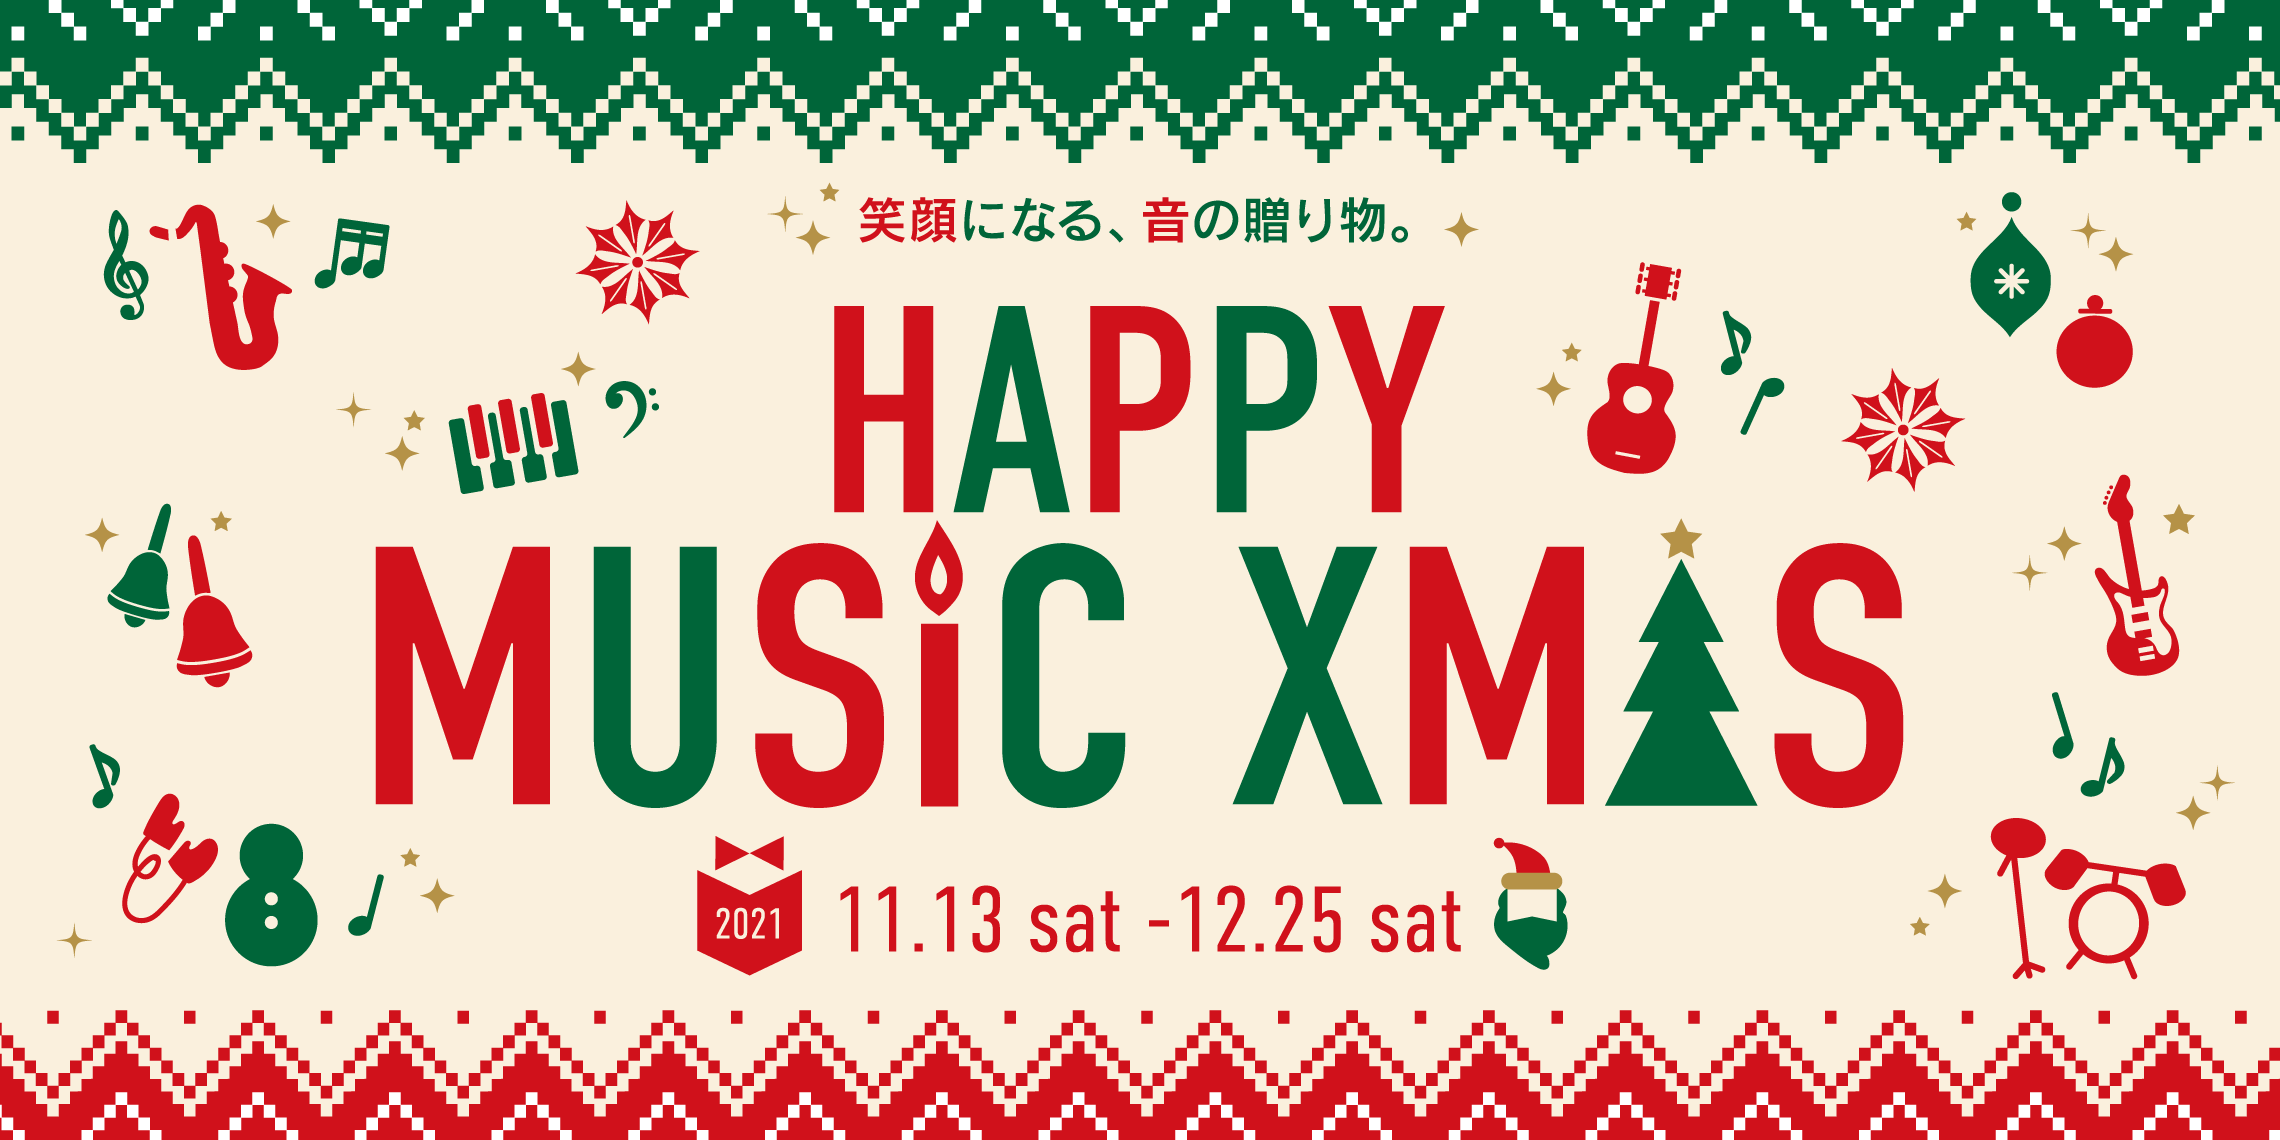 【2021年度版】クリスマスにオススメの音楽雑貨、楽器特集♪